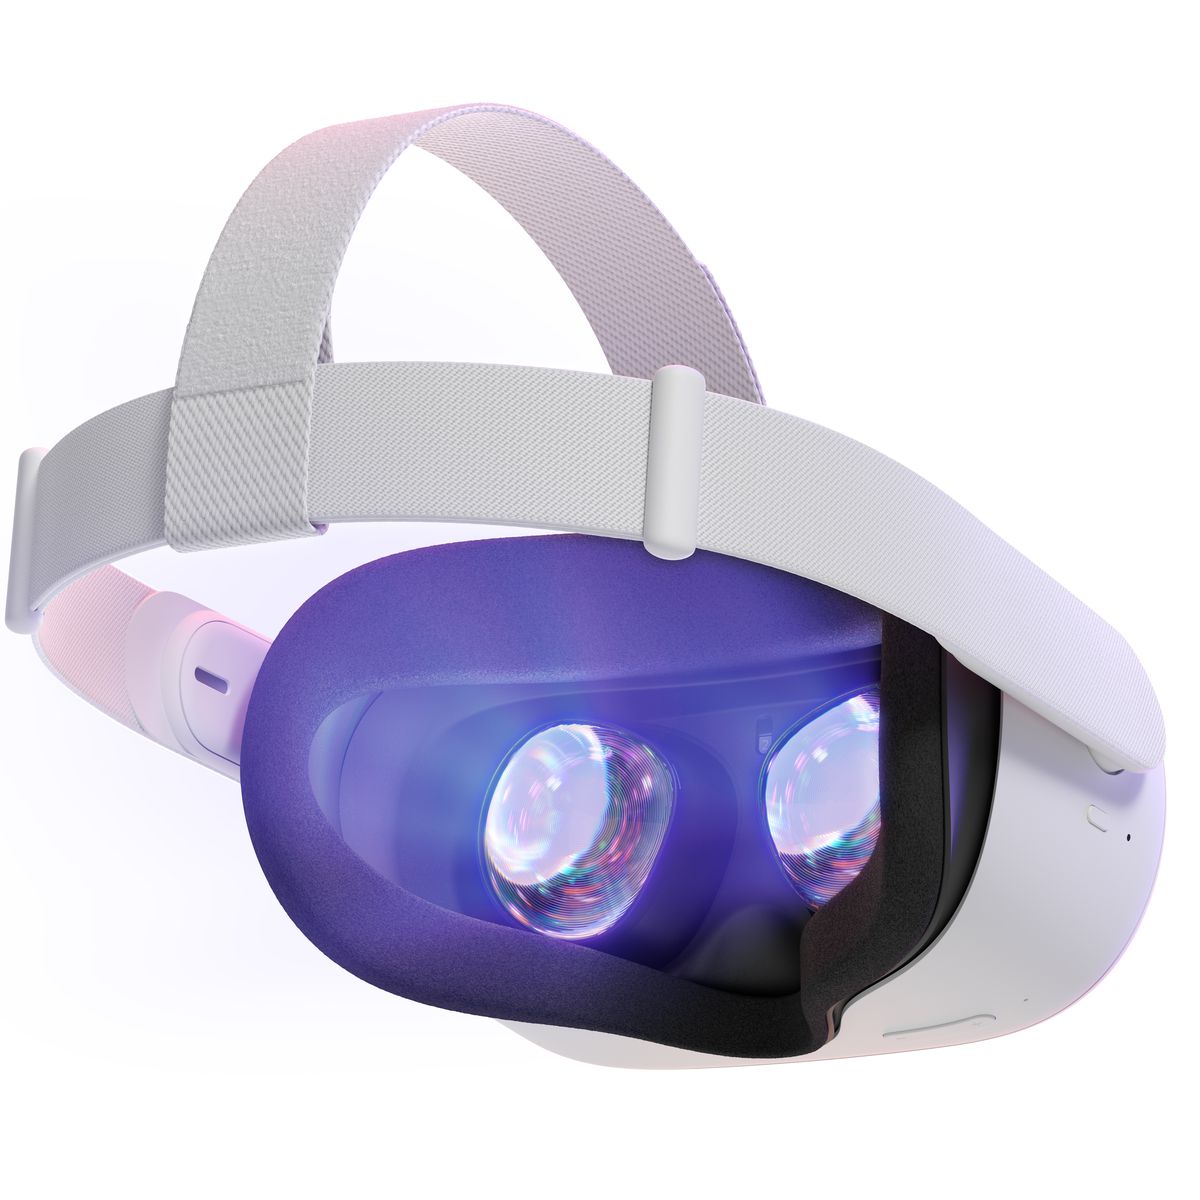 Mặt sau của tai nghe Oculus Rift 2, hiển thị dây đeo vải mới